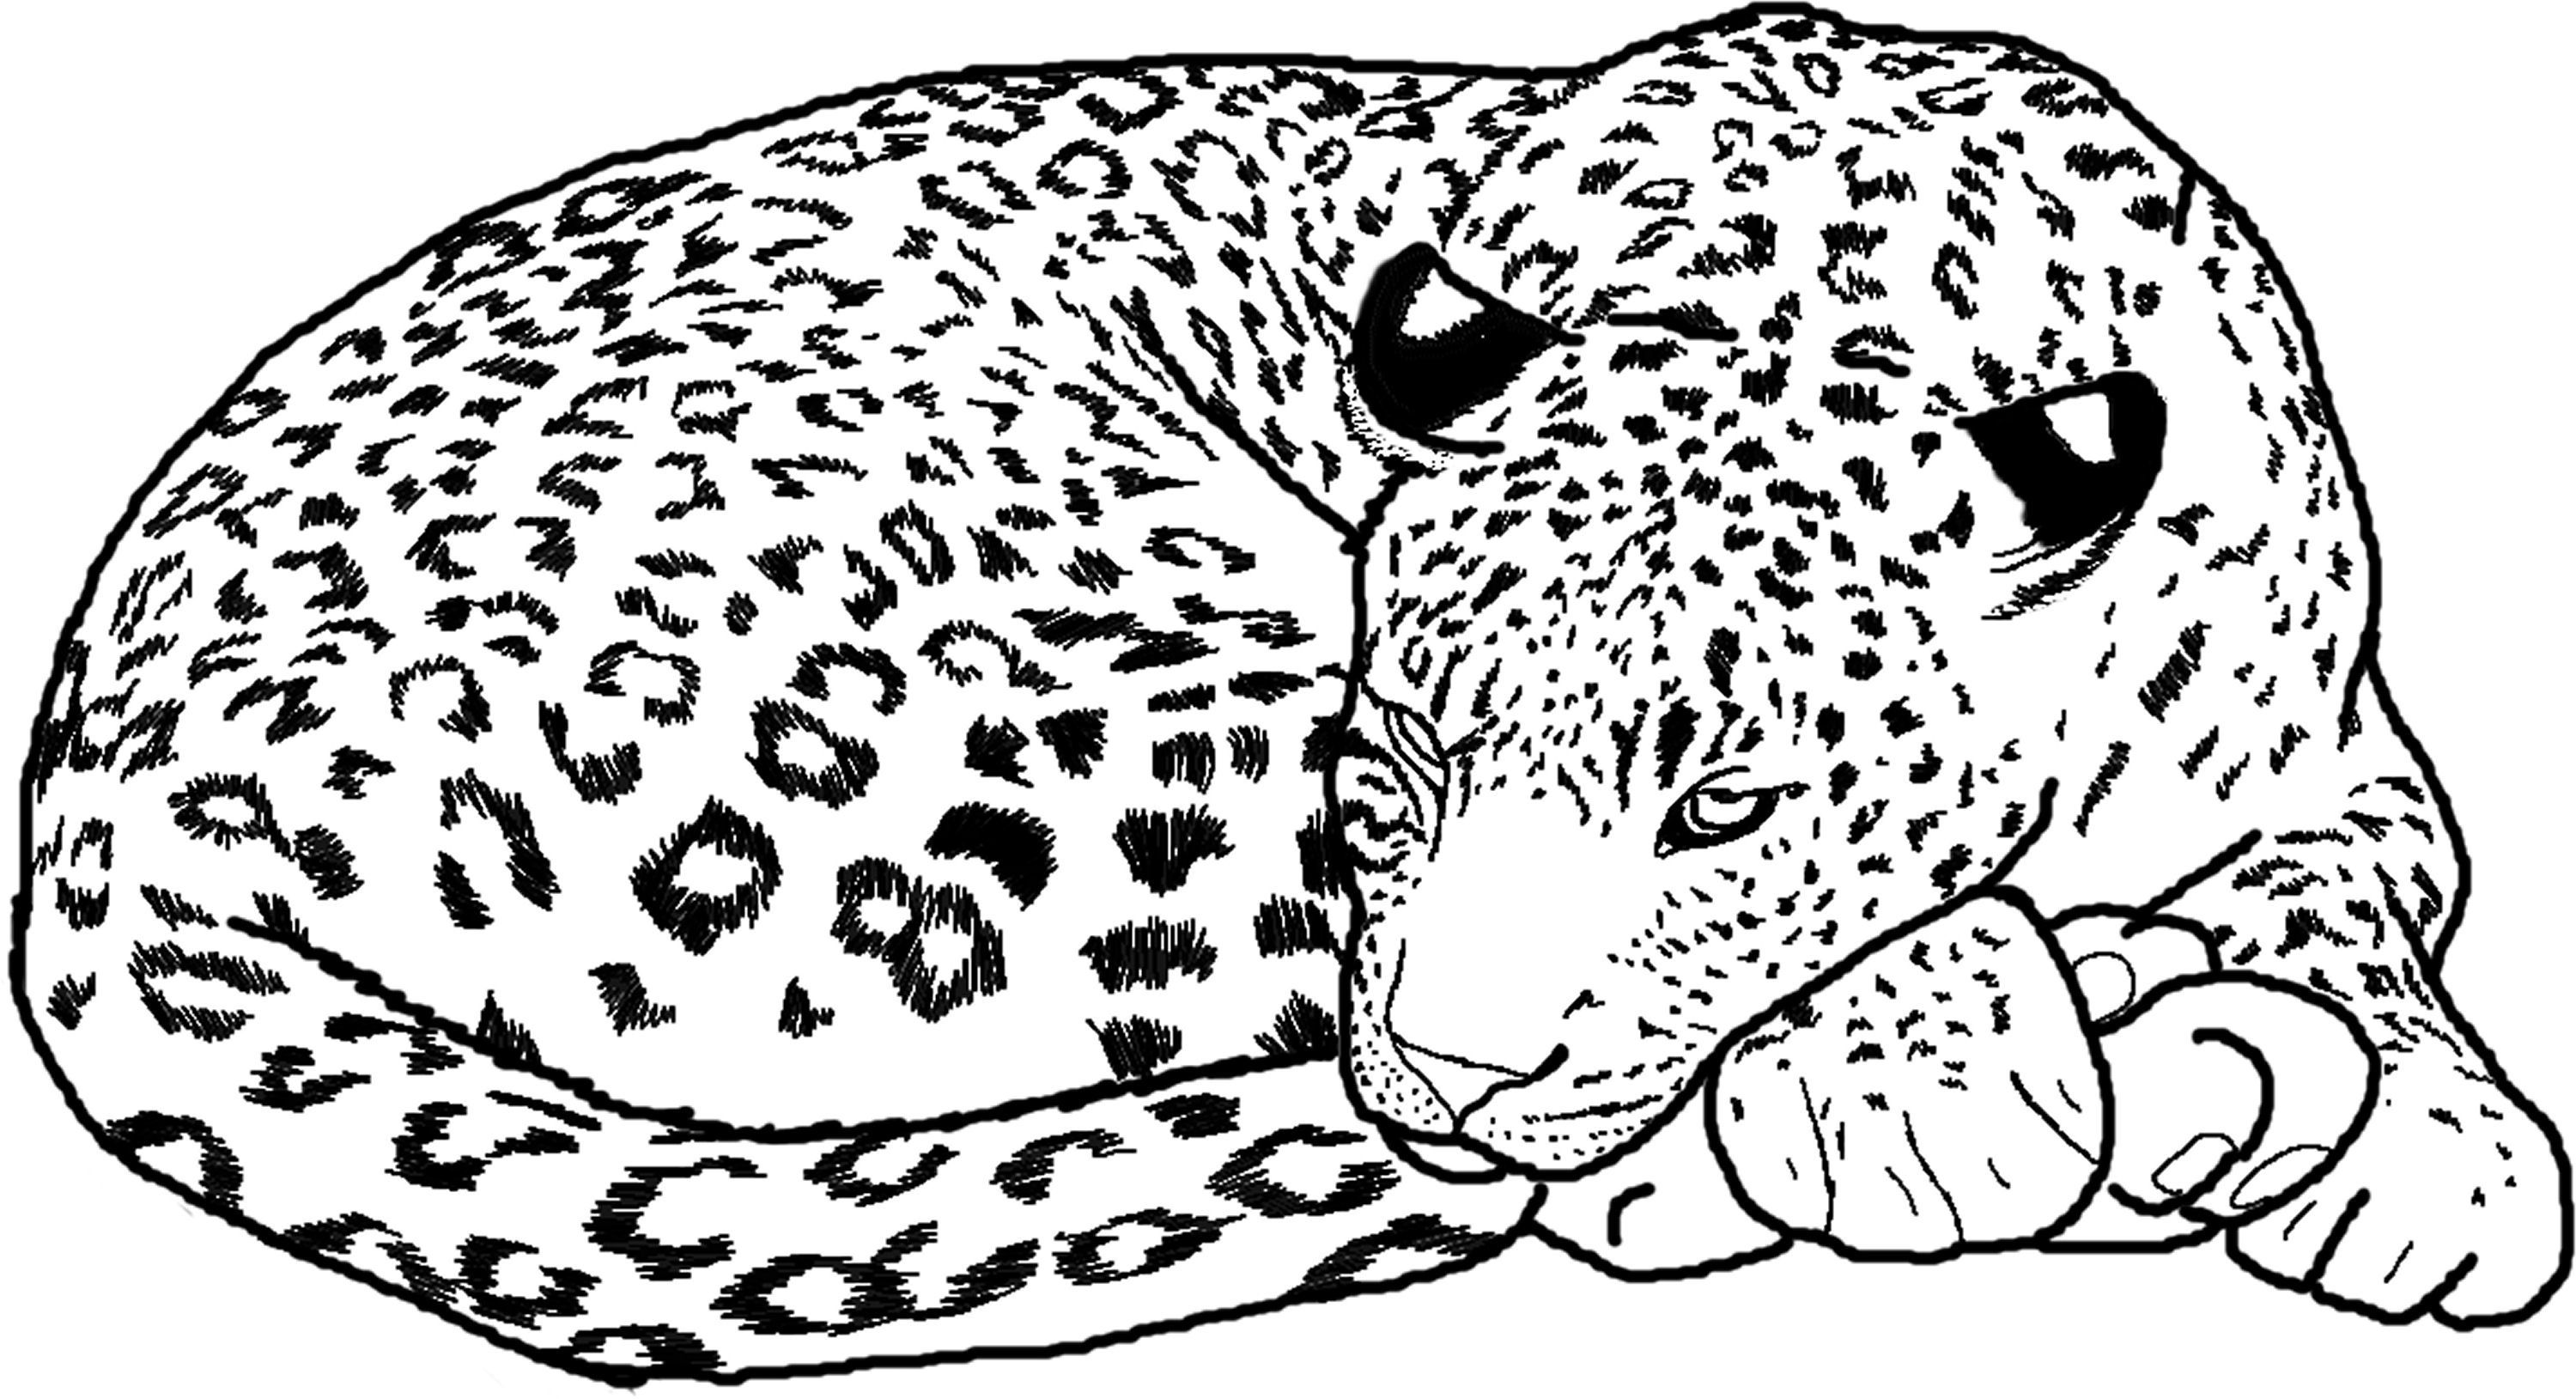 Cheetah Coloring Pages | UniqueColoringPages